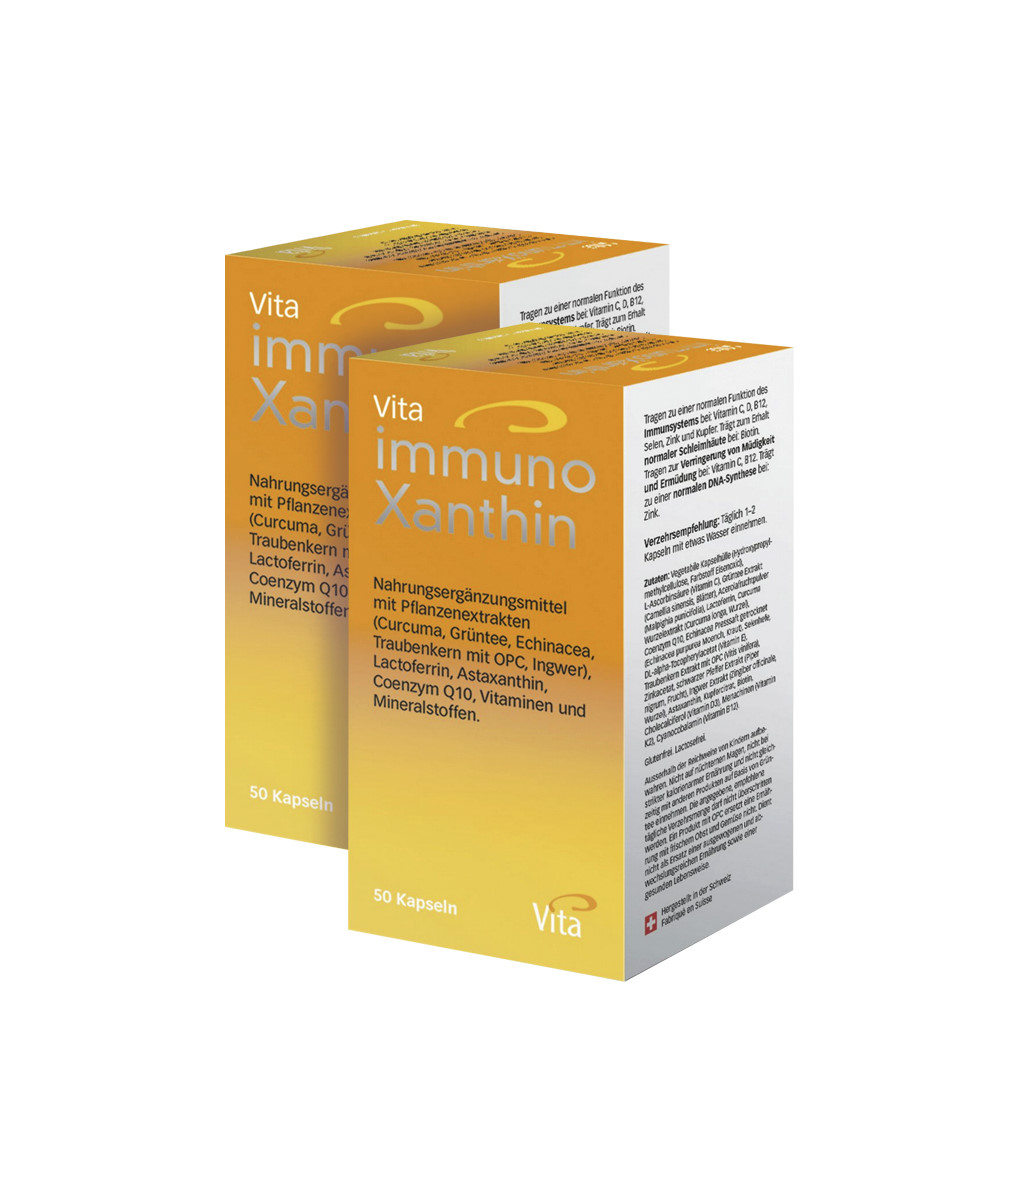 Vita immunoXanthin Double pack